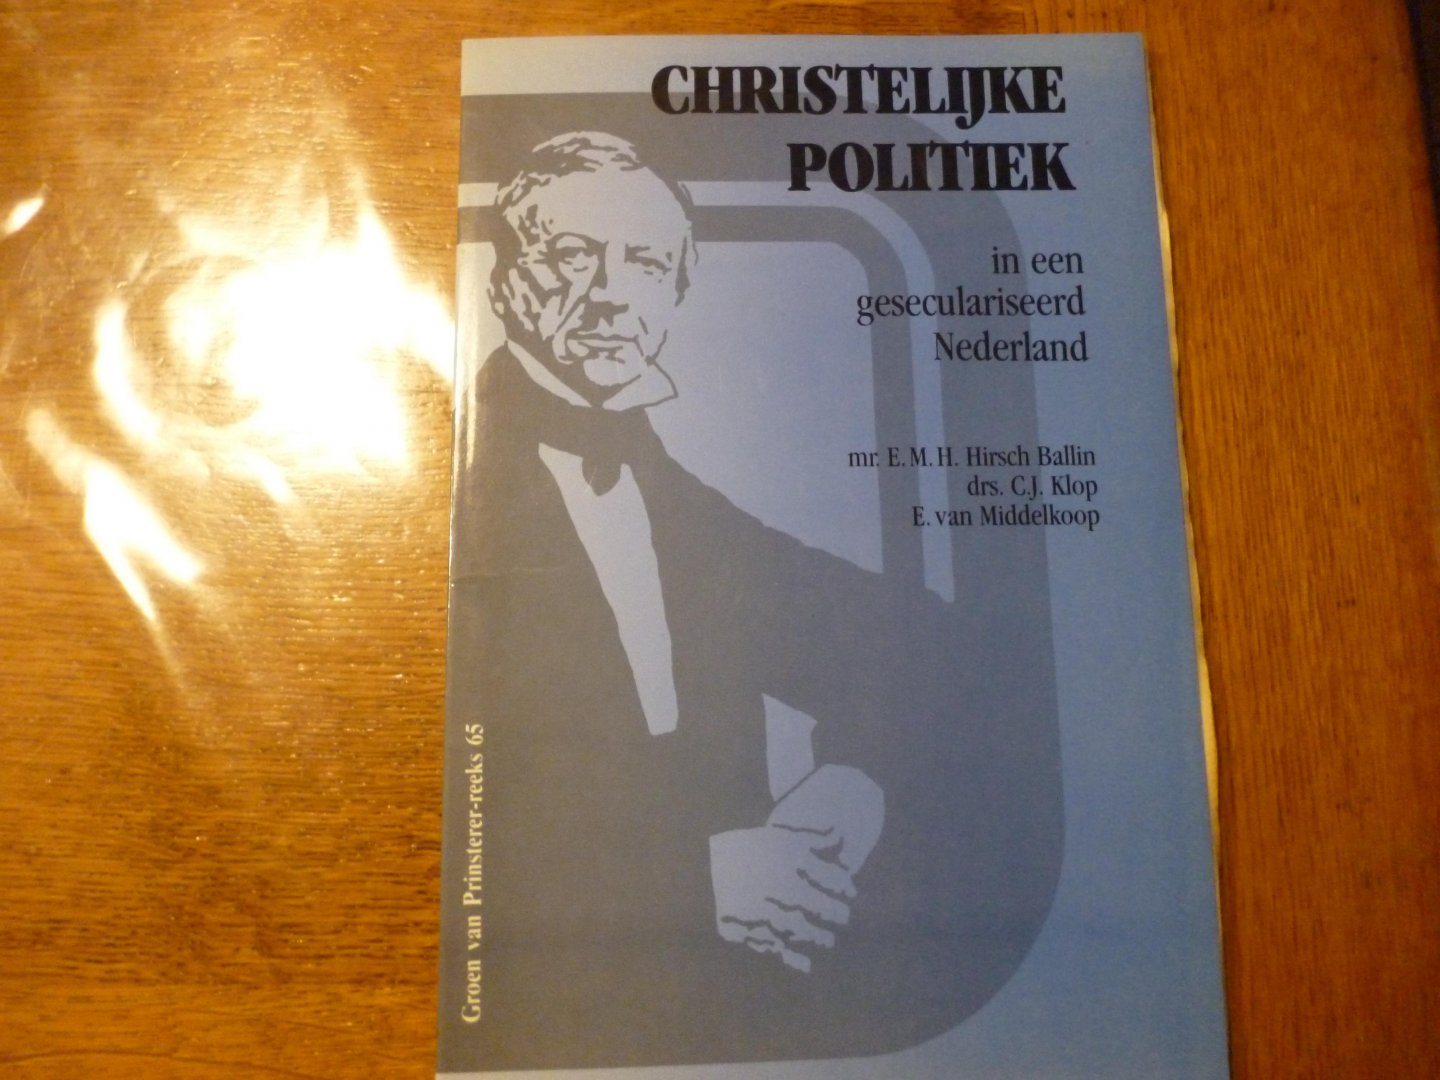 Hirsch Ballin,C.J. Klop en E van Middelkoop - Christelijke politiek